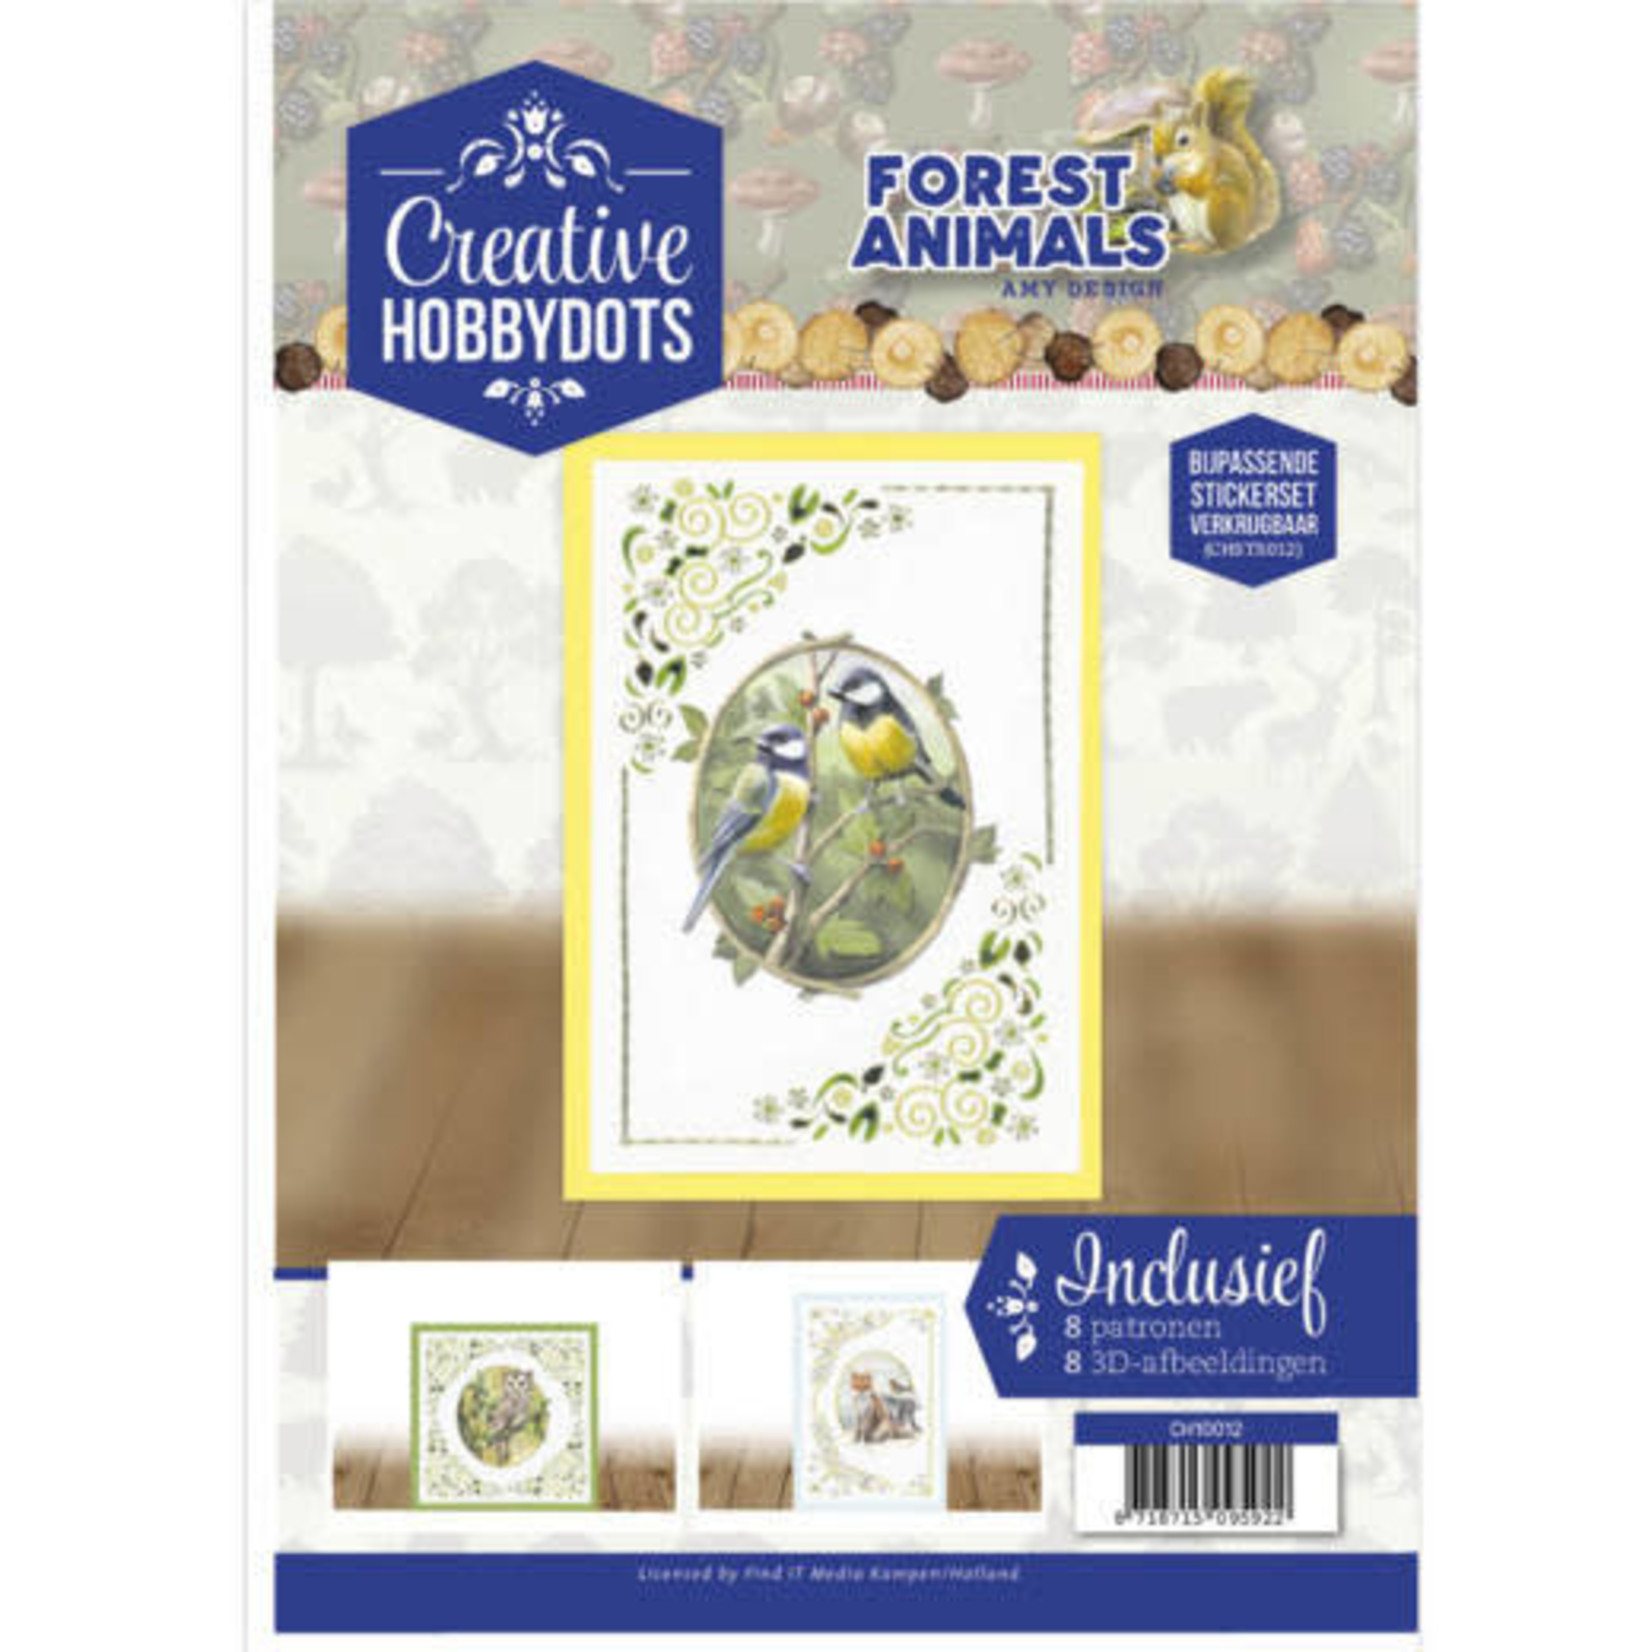 find it Creatieve Hobbydots - Forest Animals